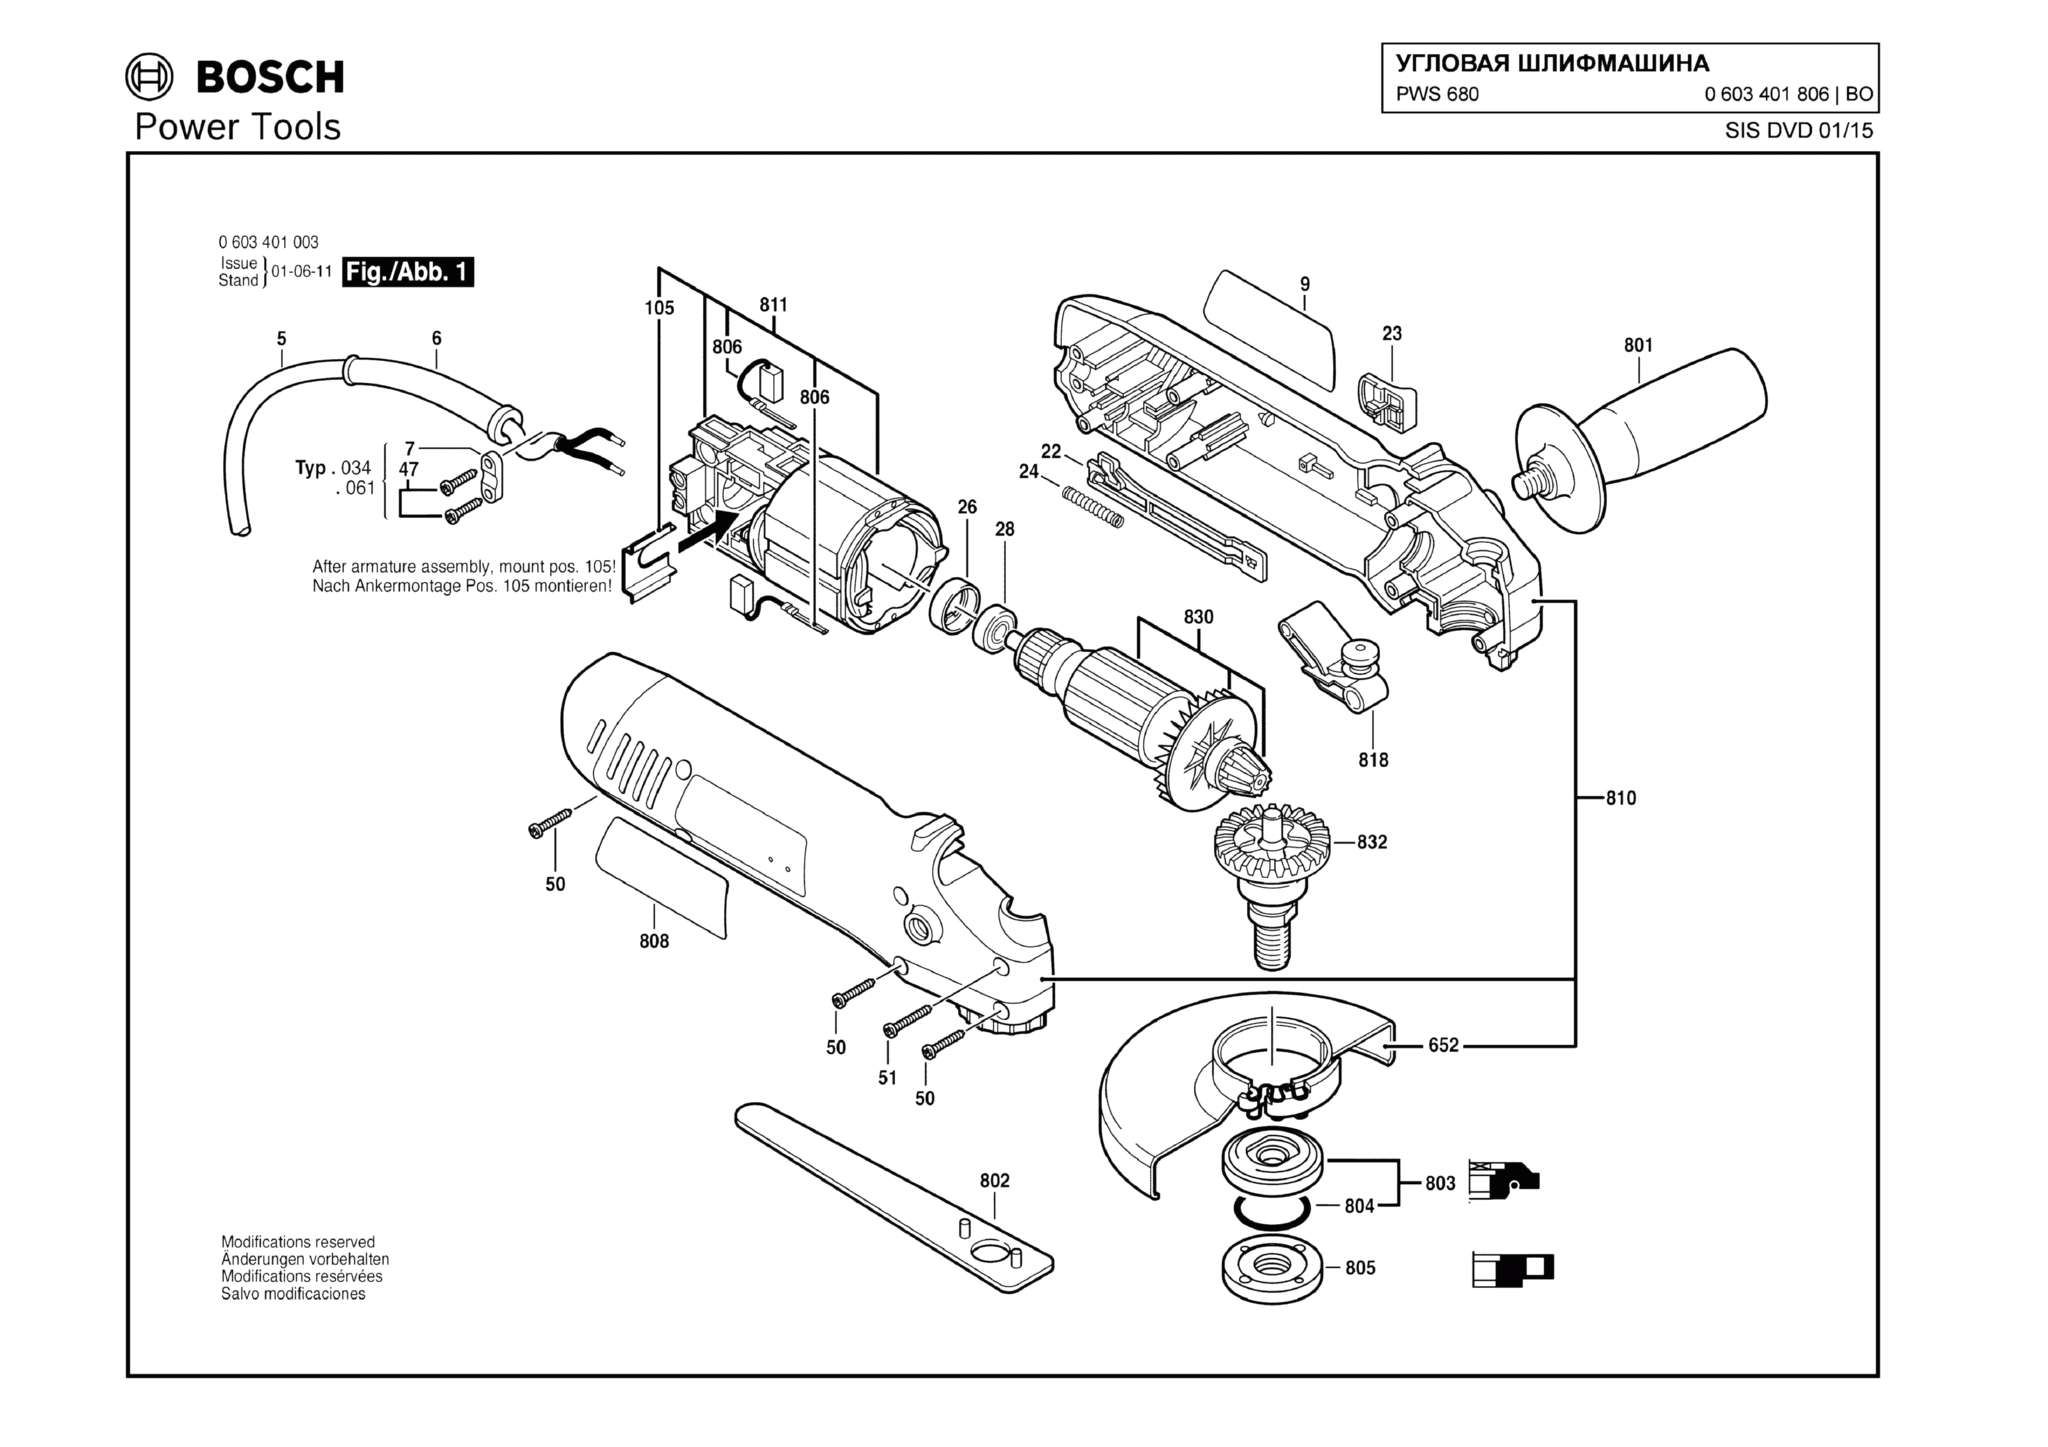 Запчасти, схема и деталировка Bosch PWS 680 (ТИП 0603401806)